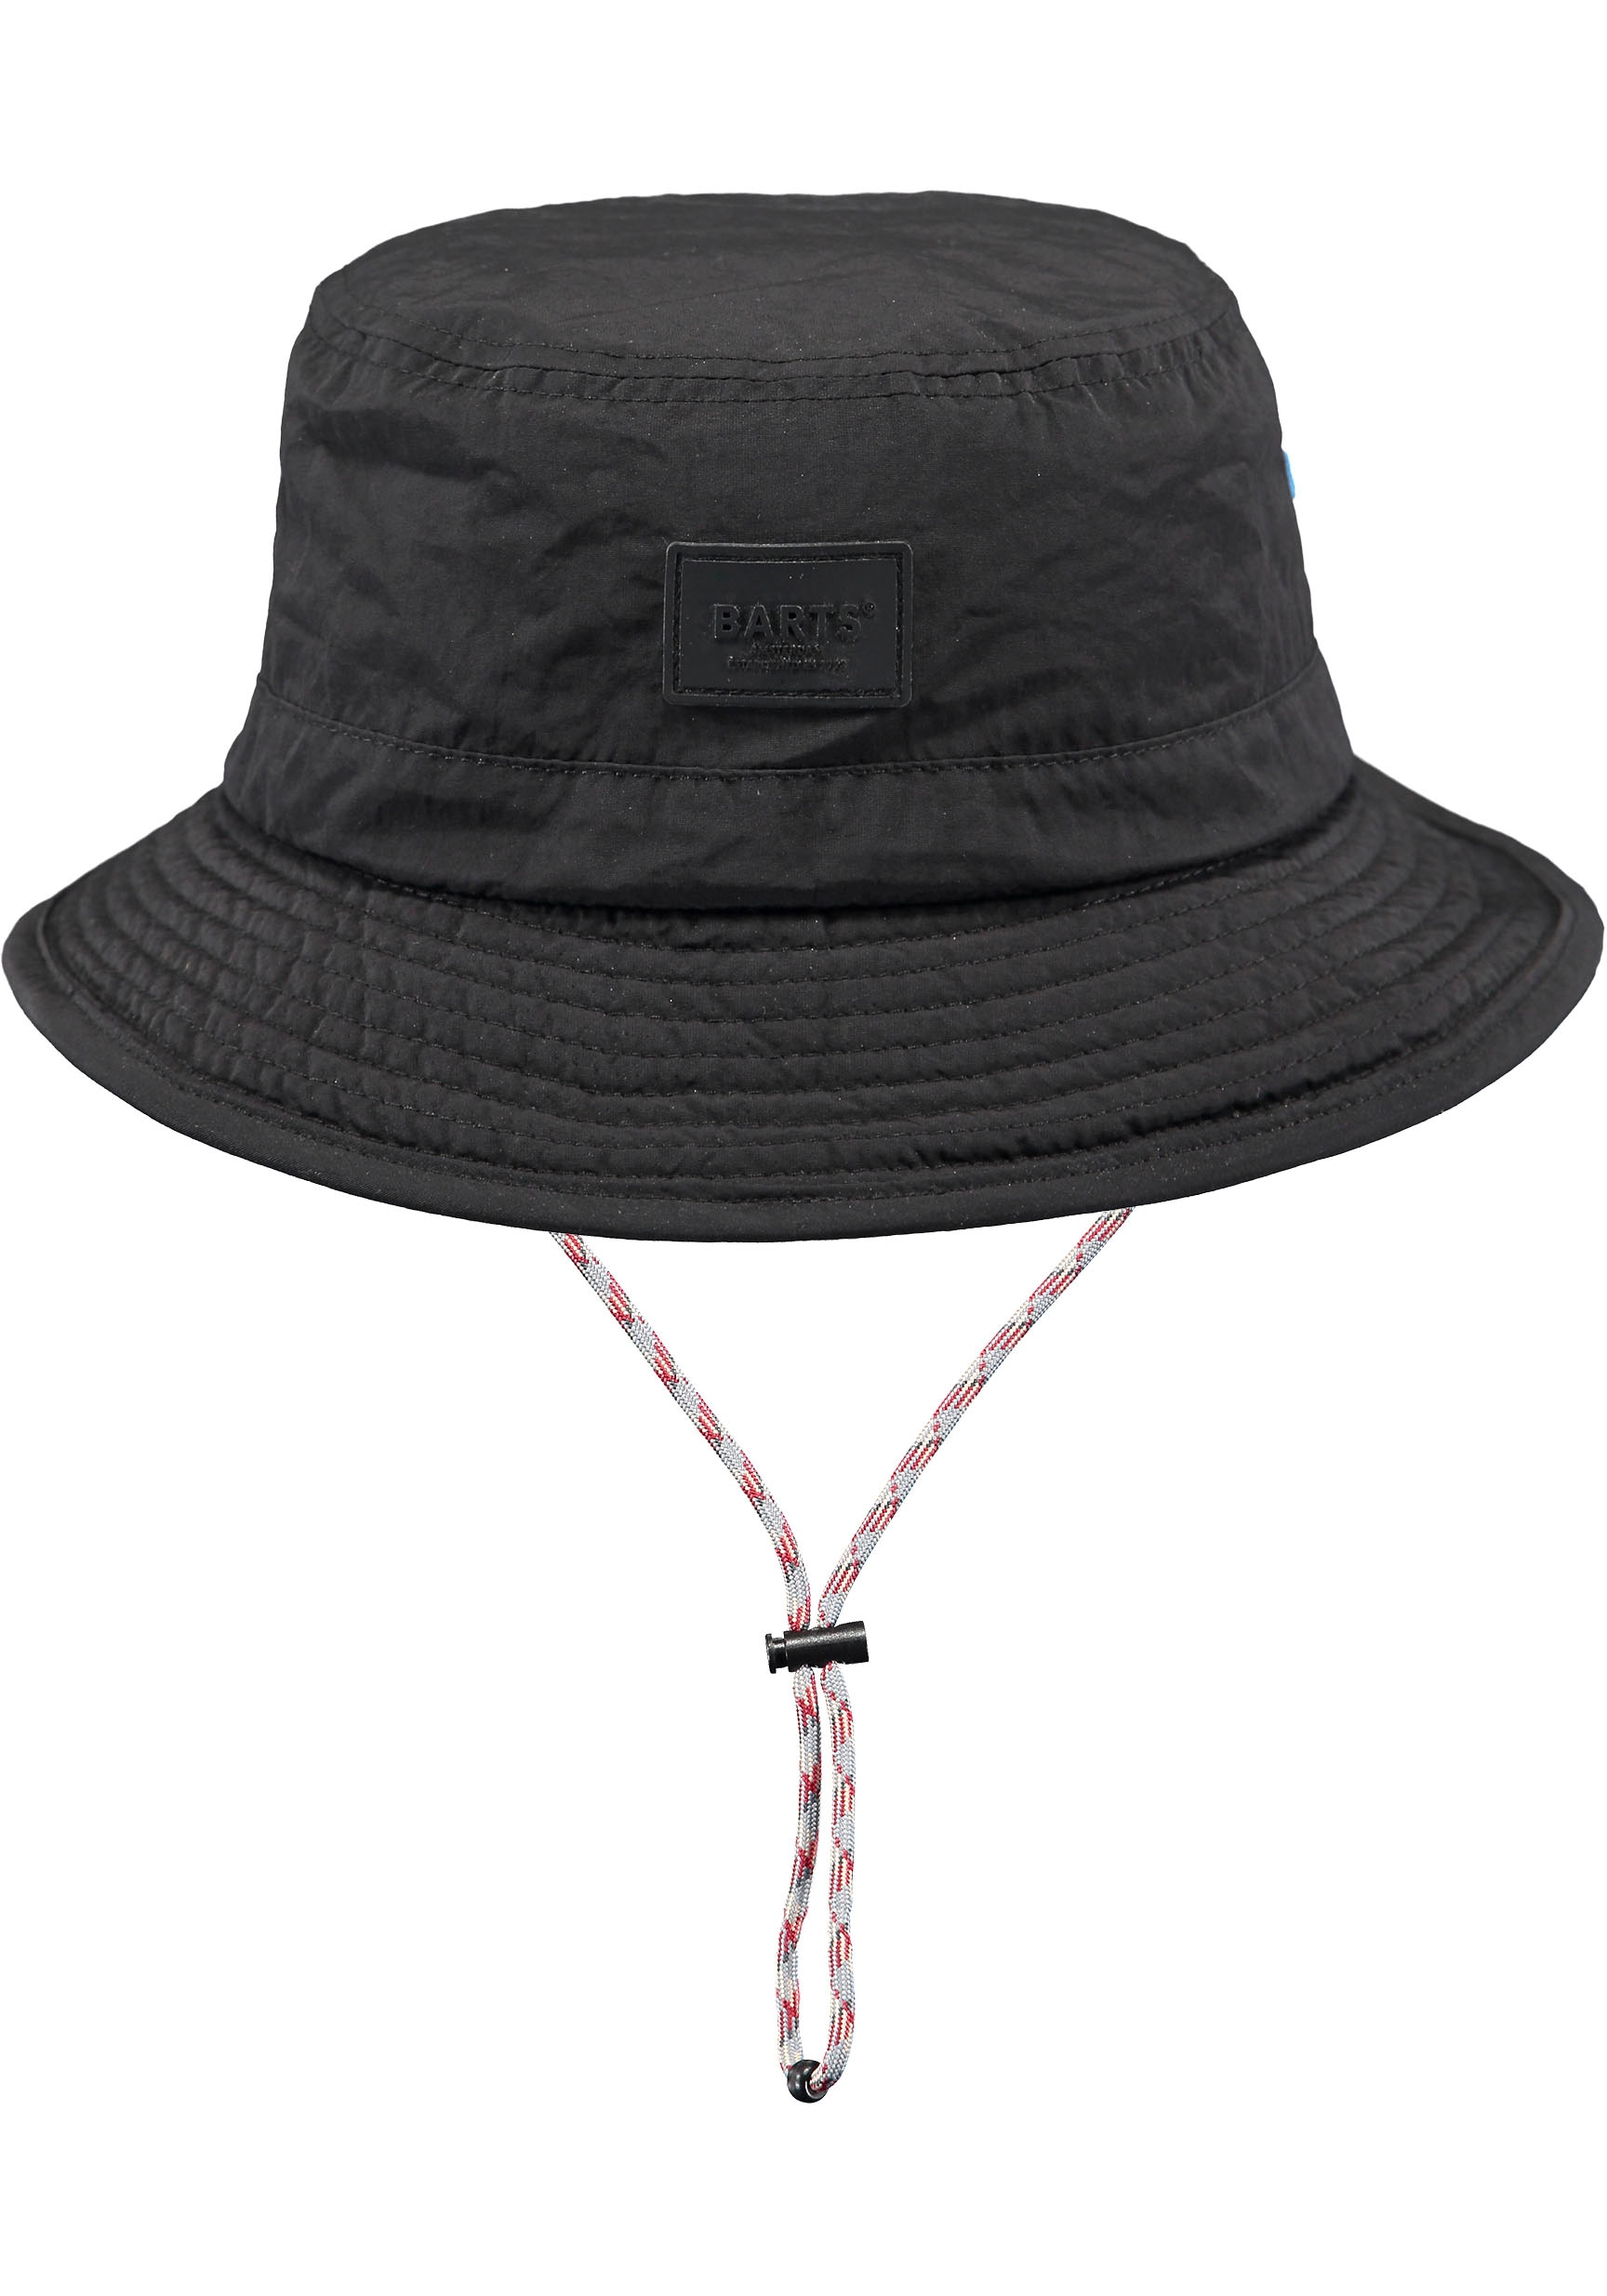 innenliegendes online Hutband Passform Bindeband, verstellbare mit bei Fischerhut, Barts durch